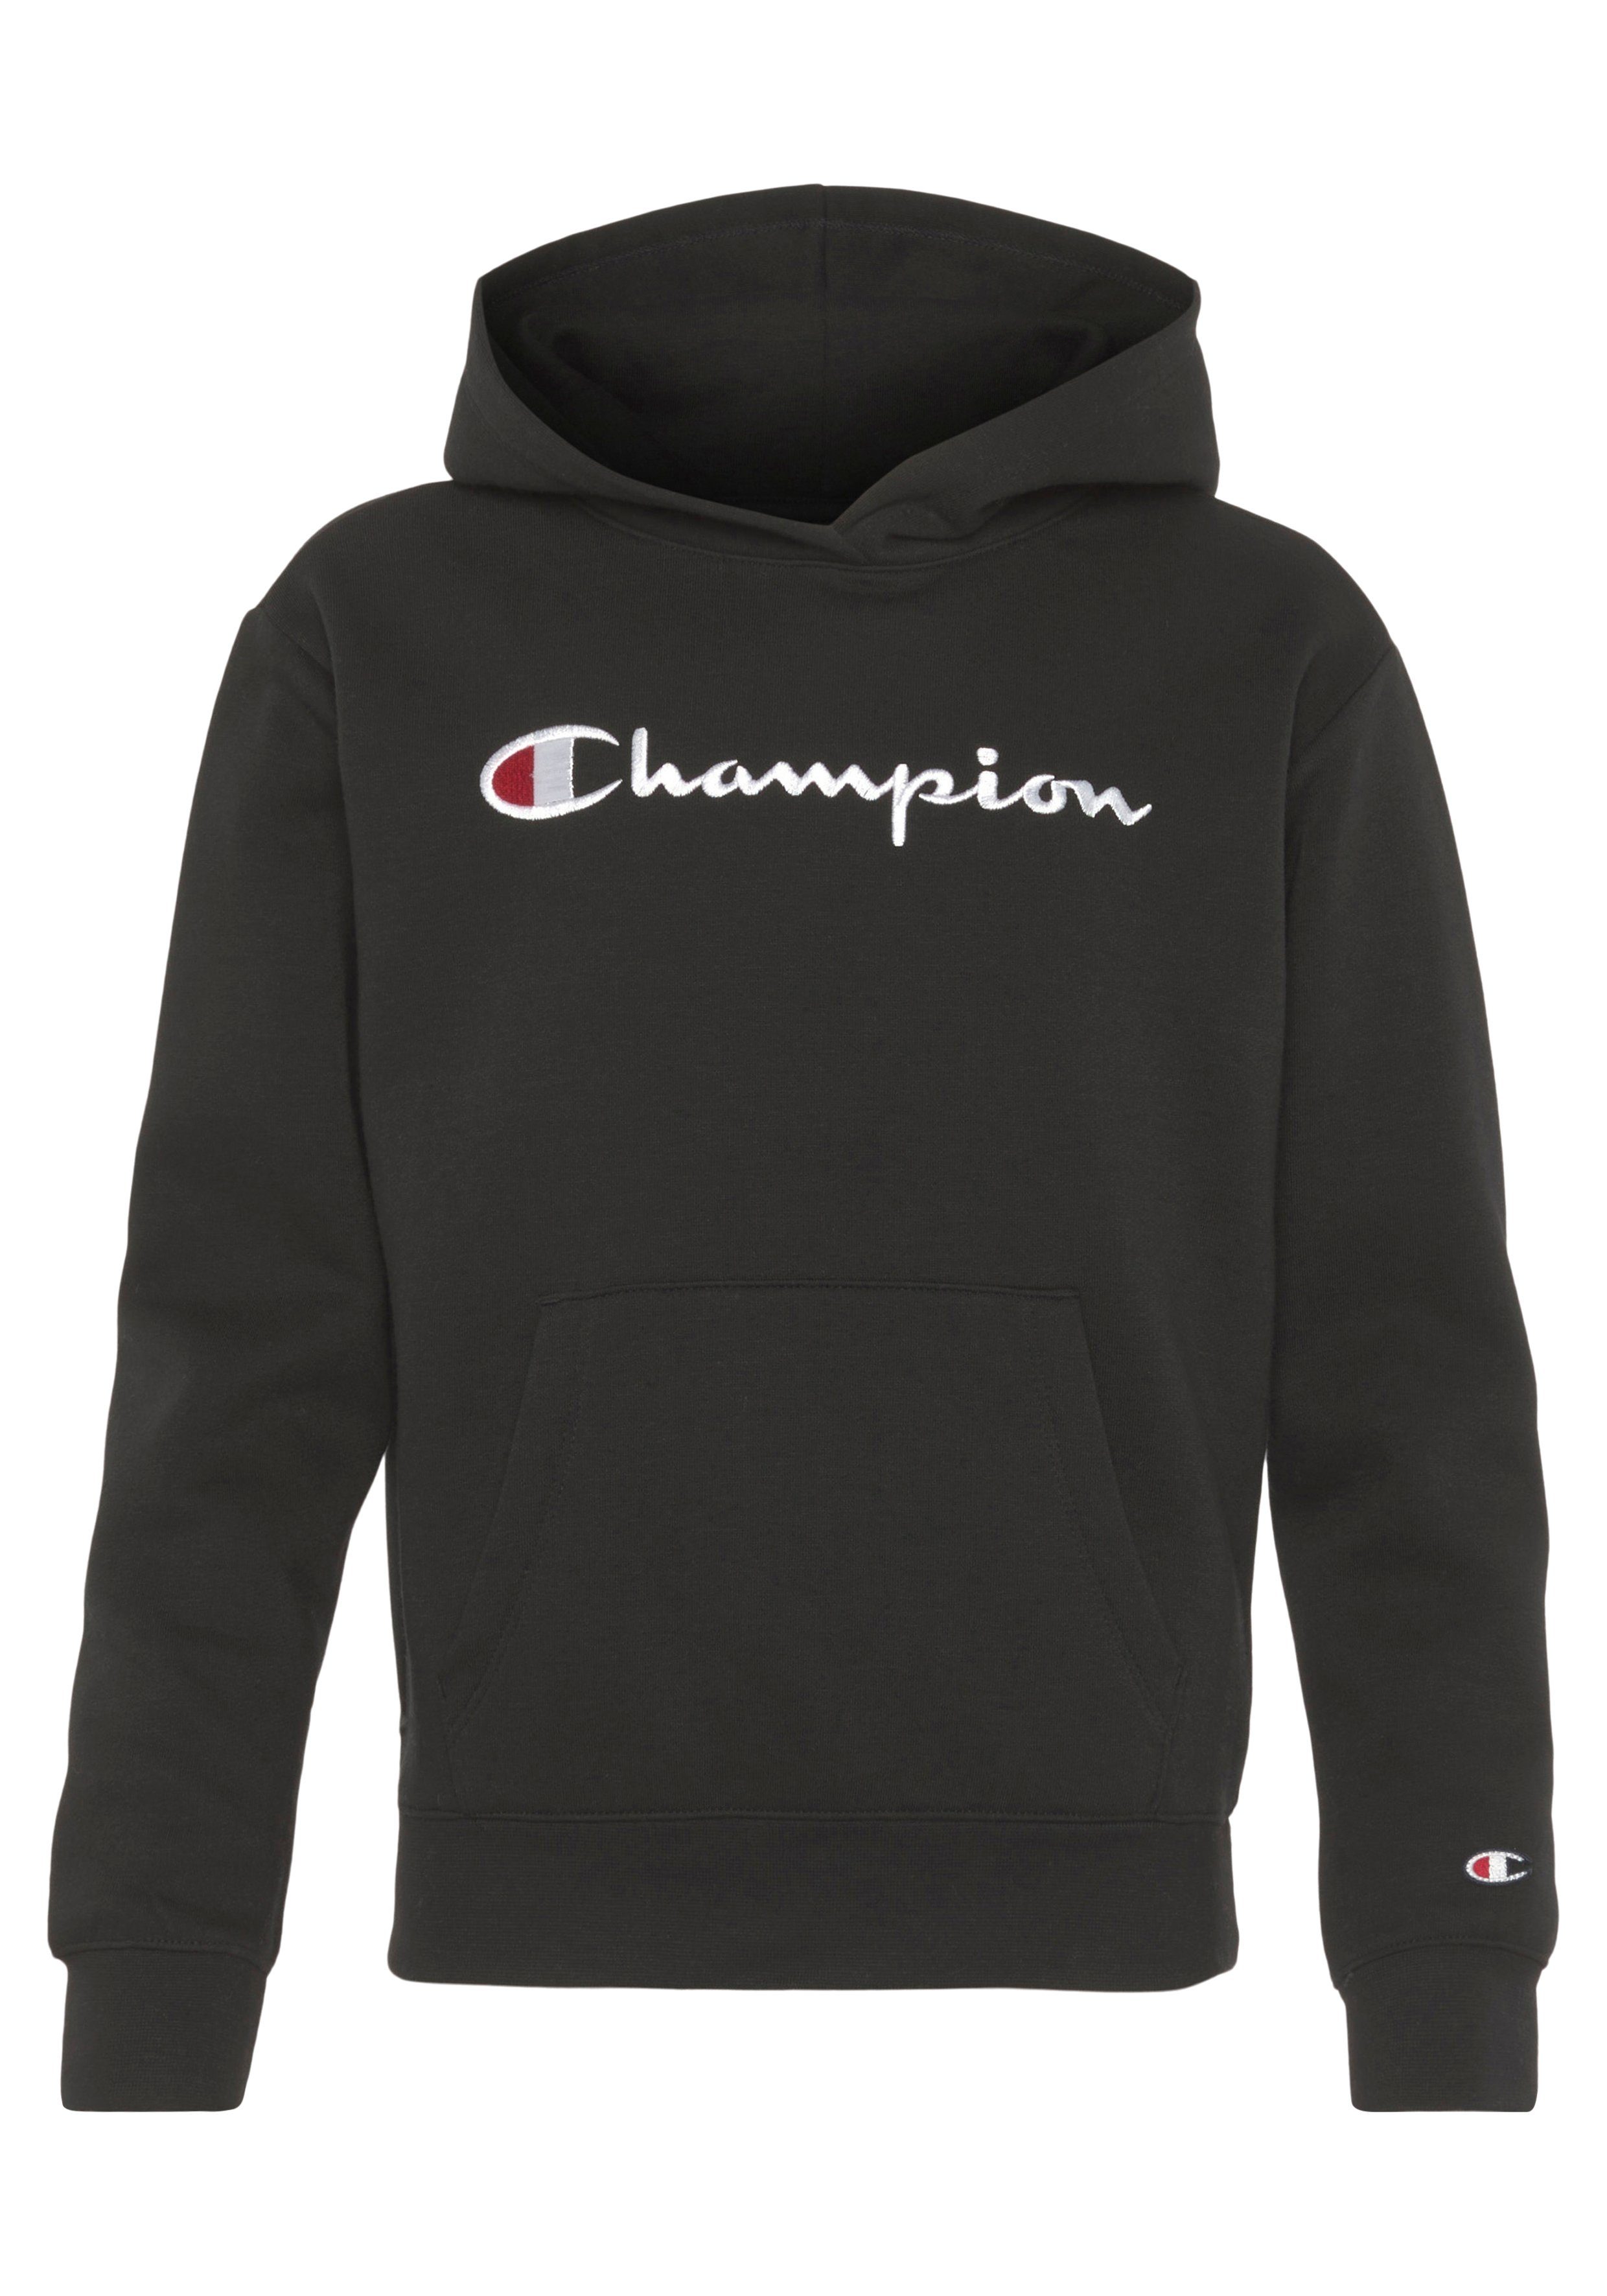 - large Logo Sweatshirt für Champion Kinder Sweatshirt Hooded Classic schwarz